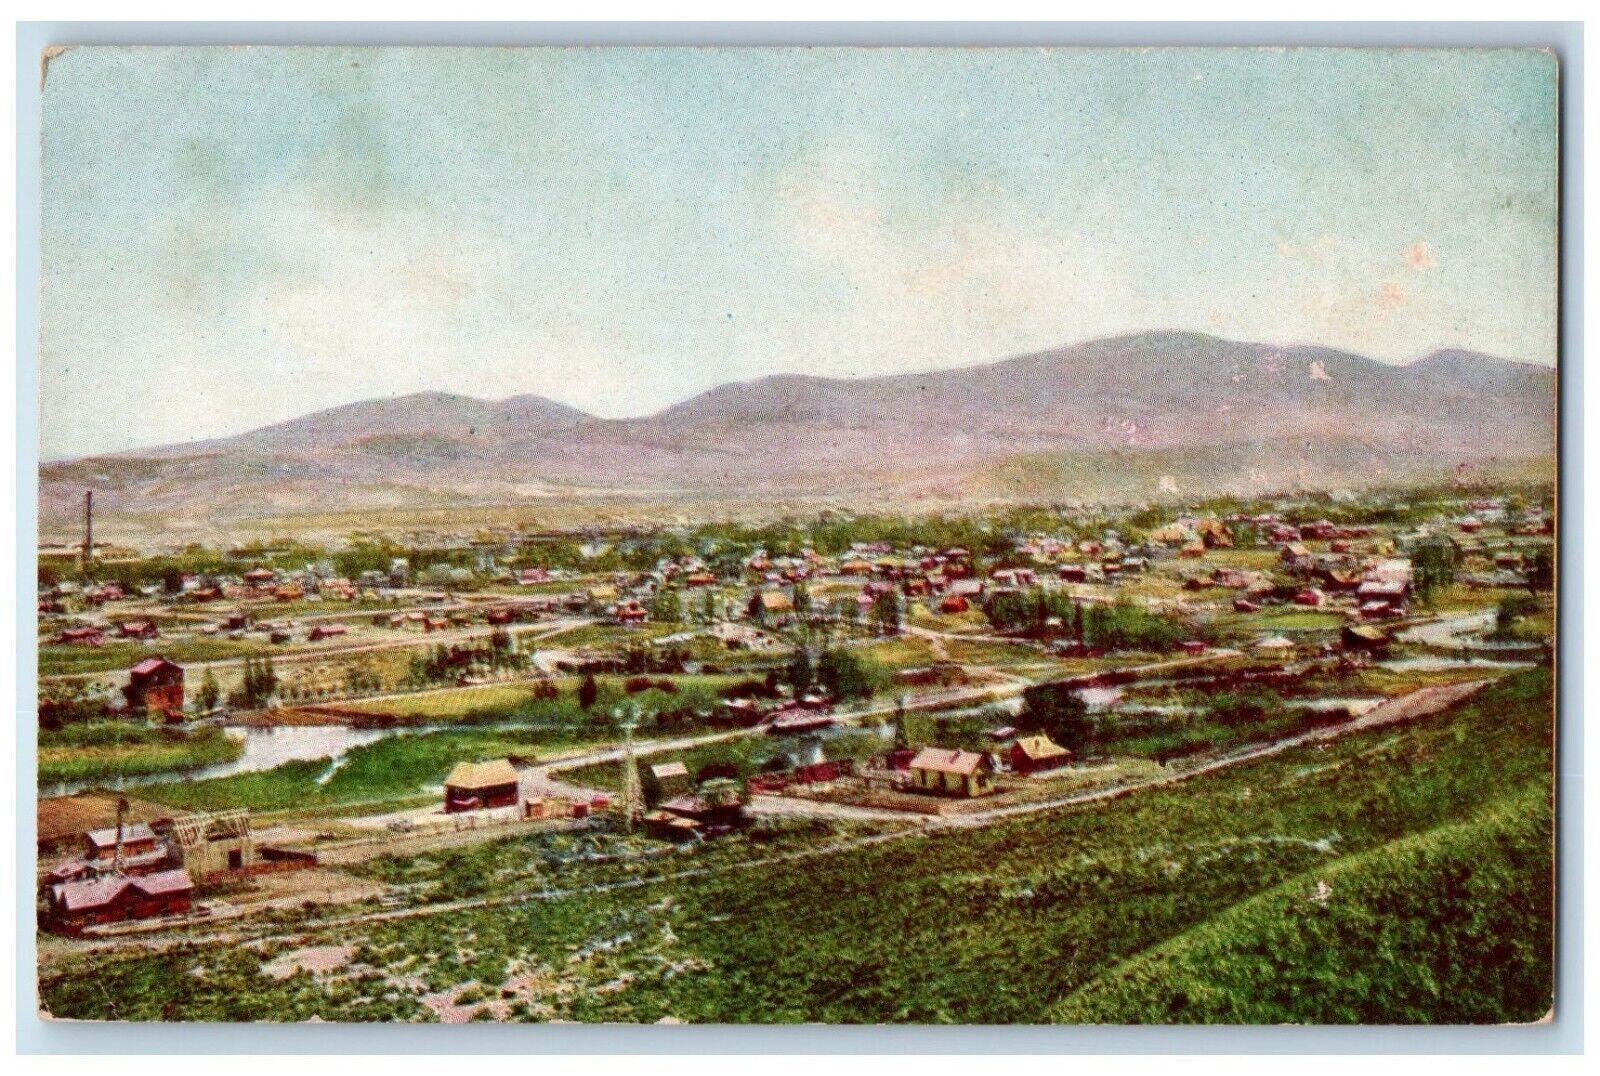 c1910 Aerial Birds Eye View Gray News Field Salt Lake City Utah Vintage Postcard